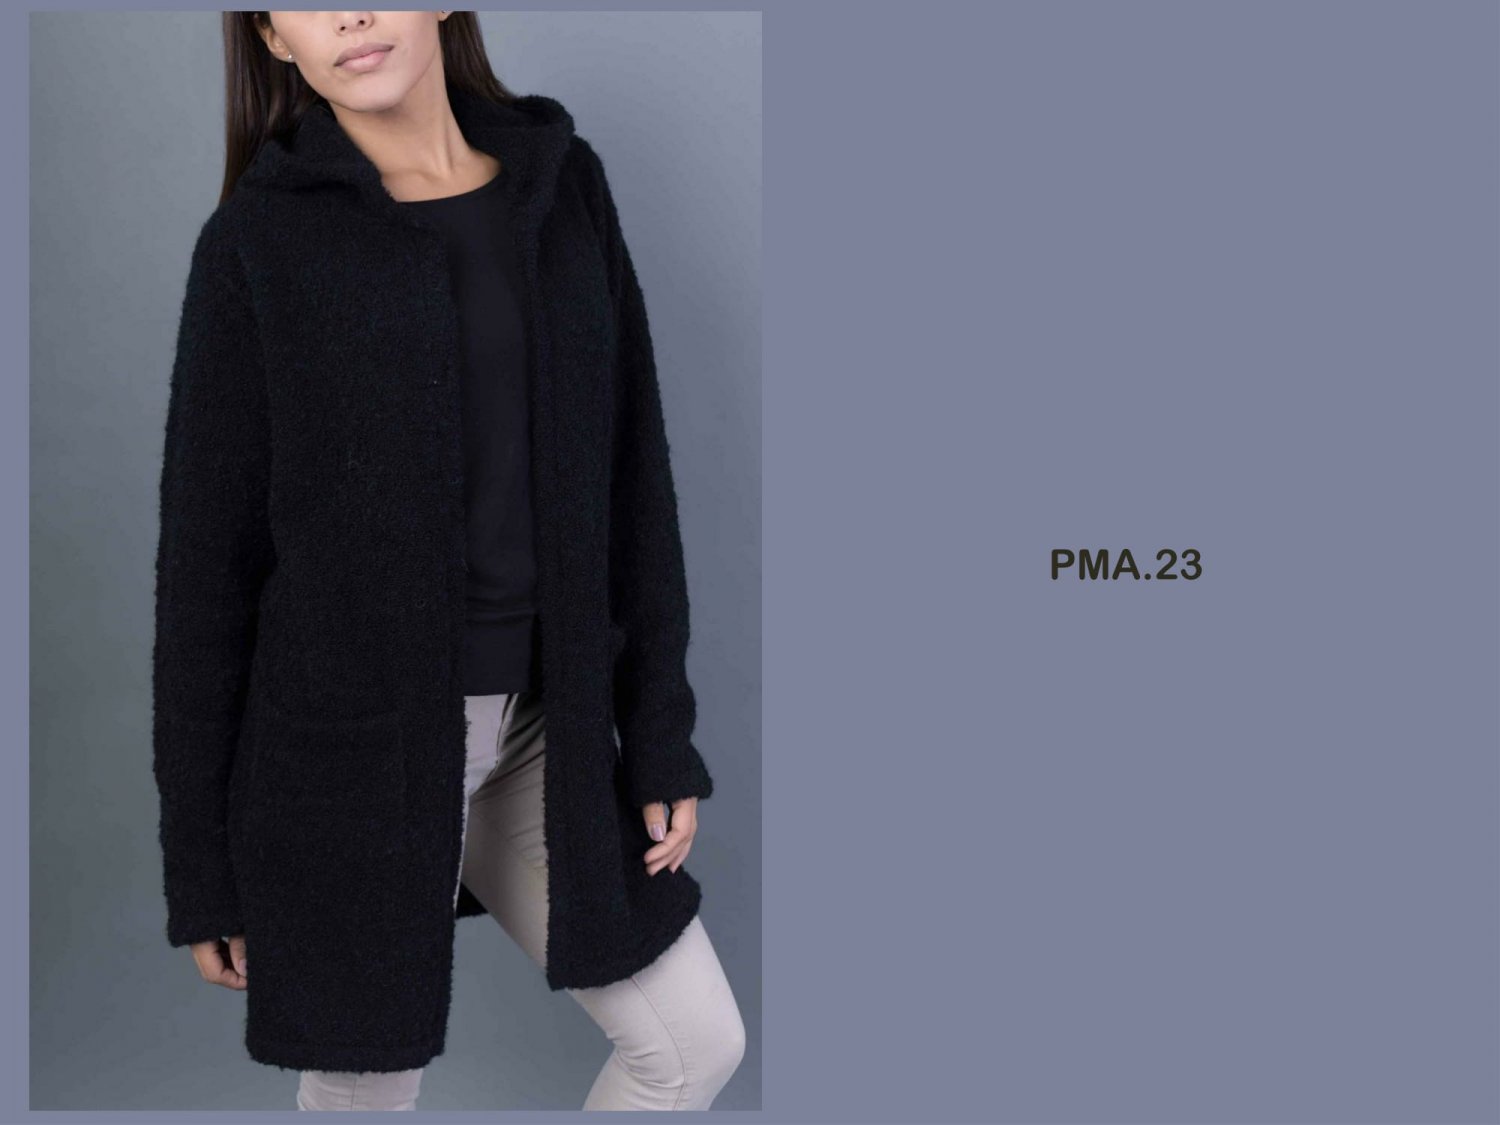 Alpaca Jacket With Hood (PMA.23)